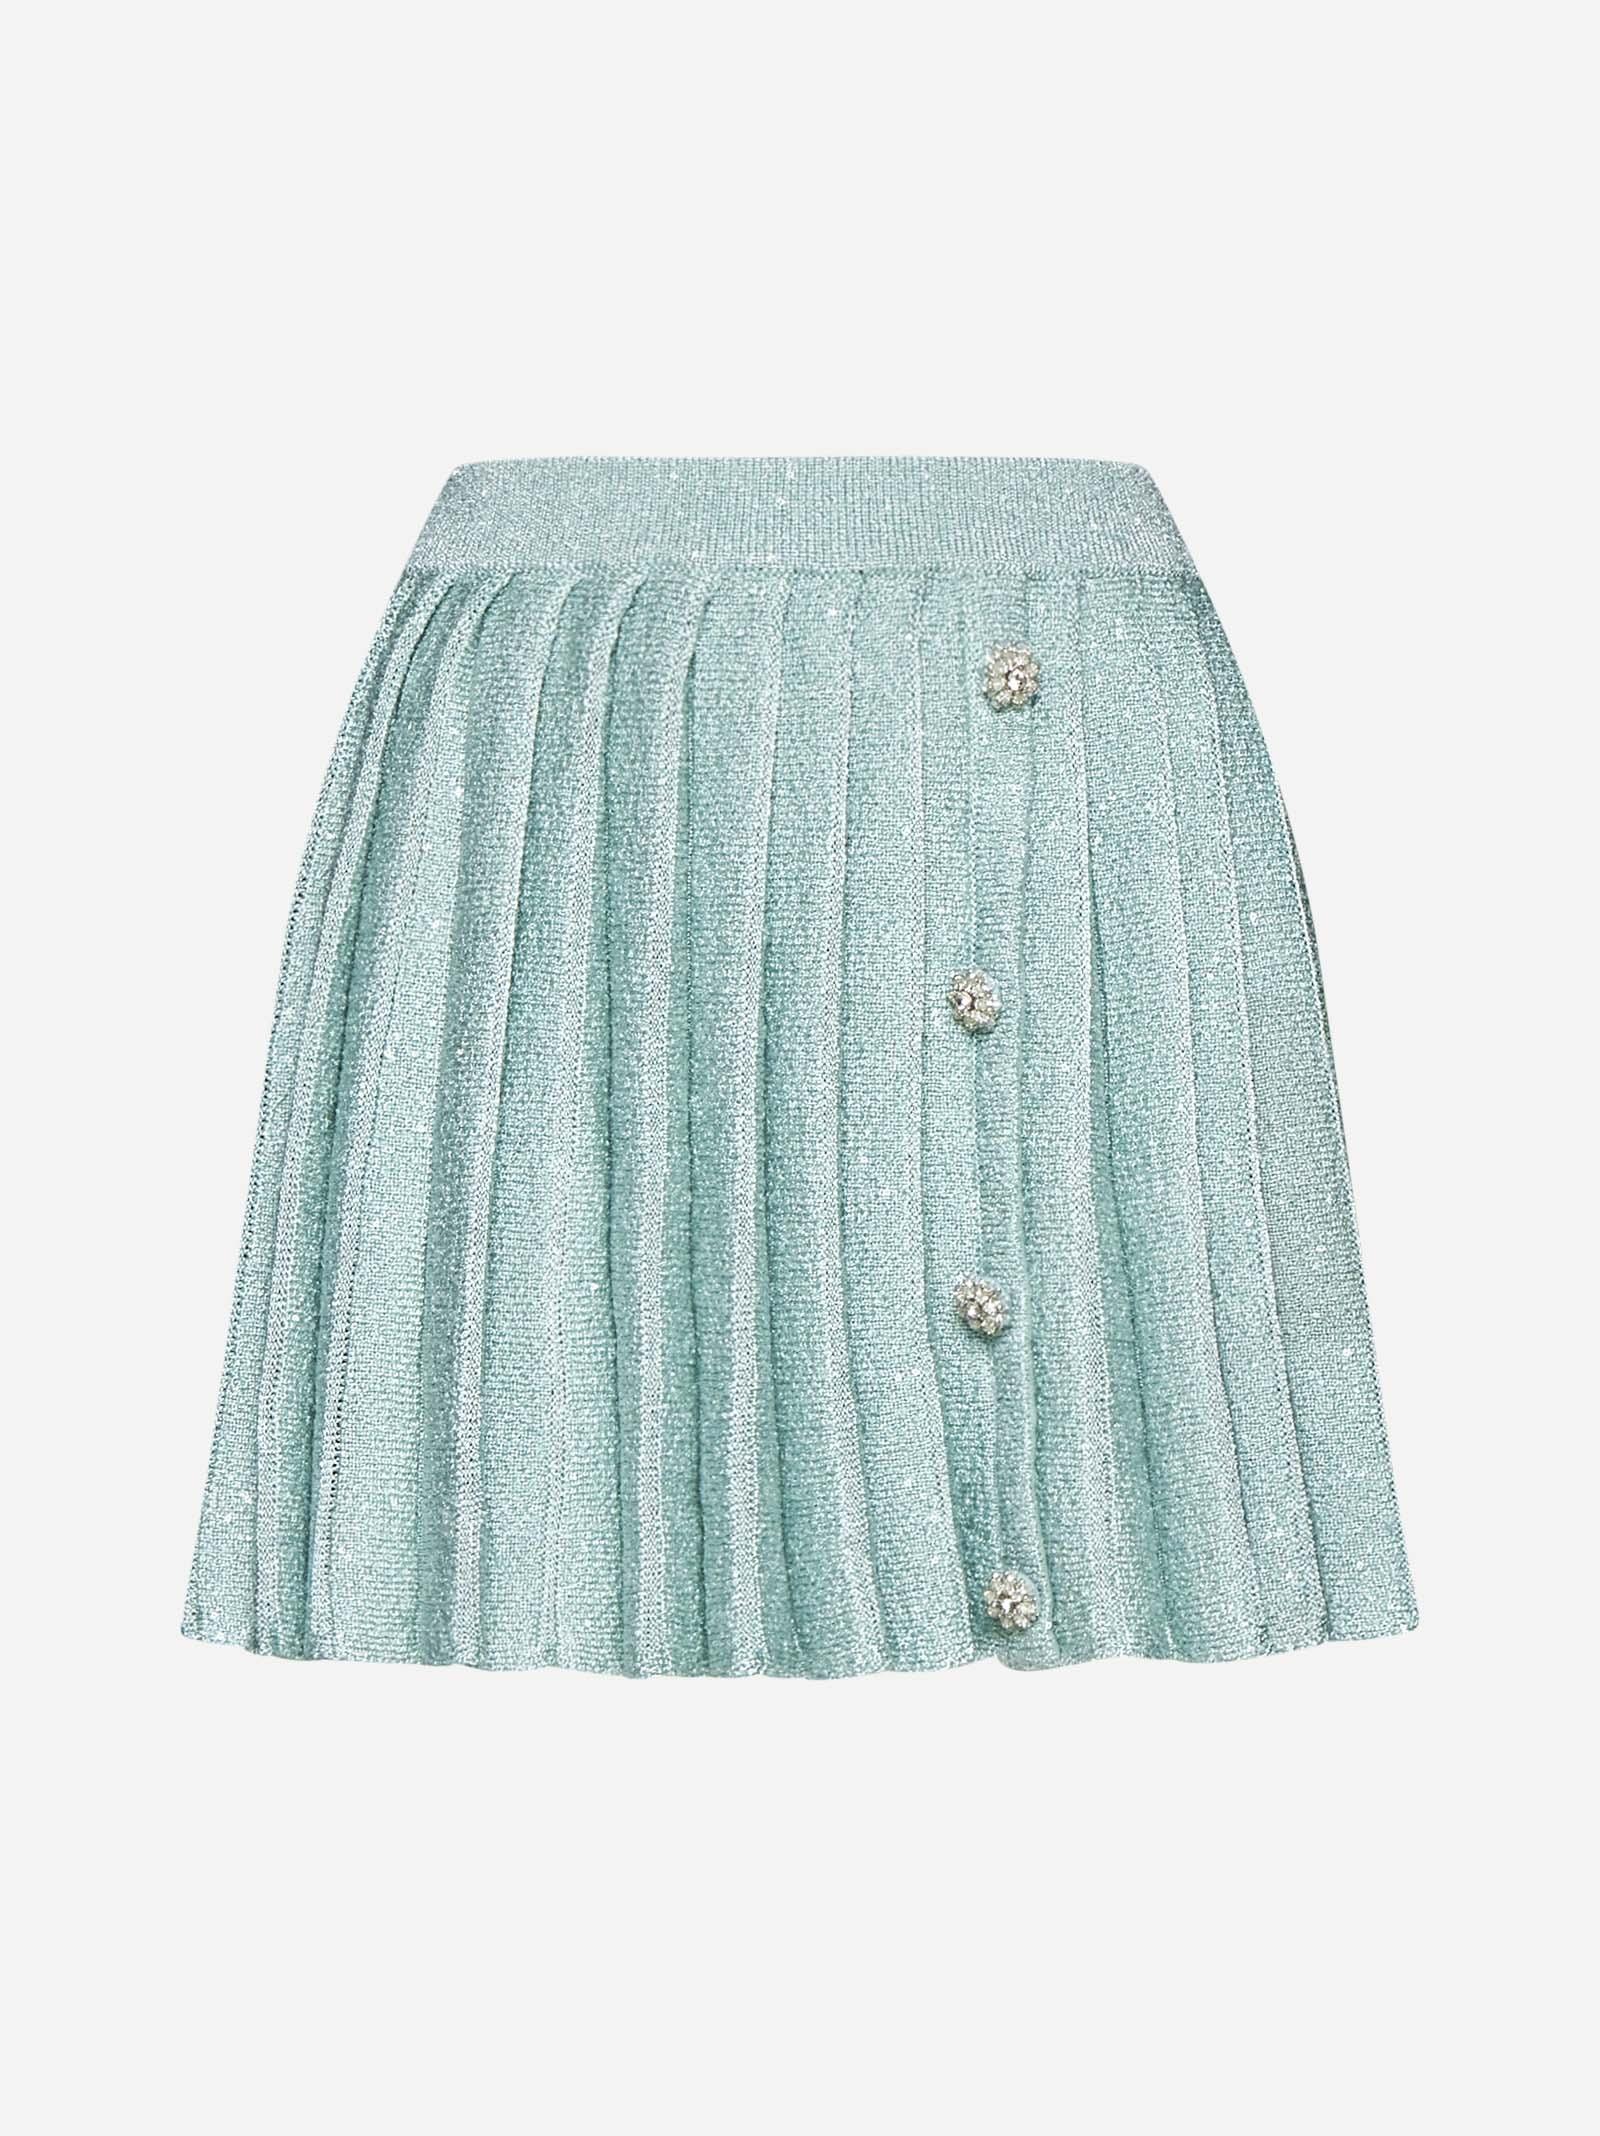 Sequin Pleated Knit Miniskirt